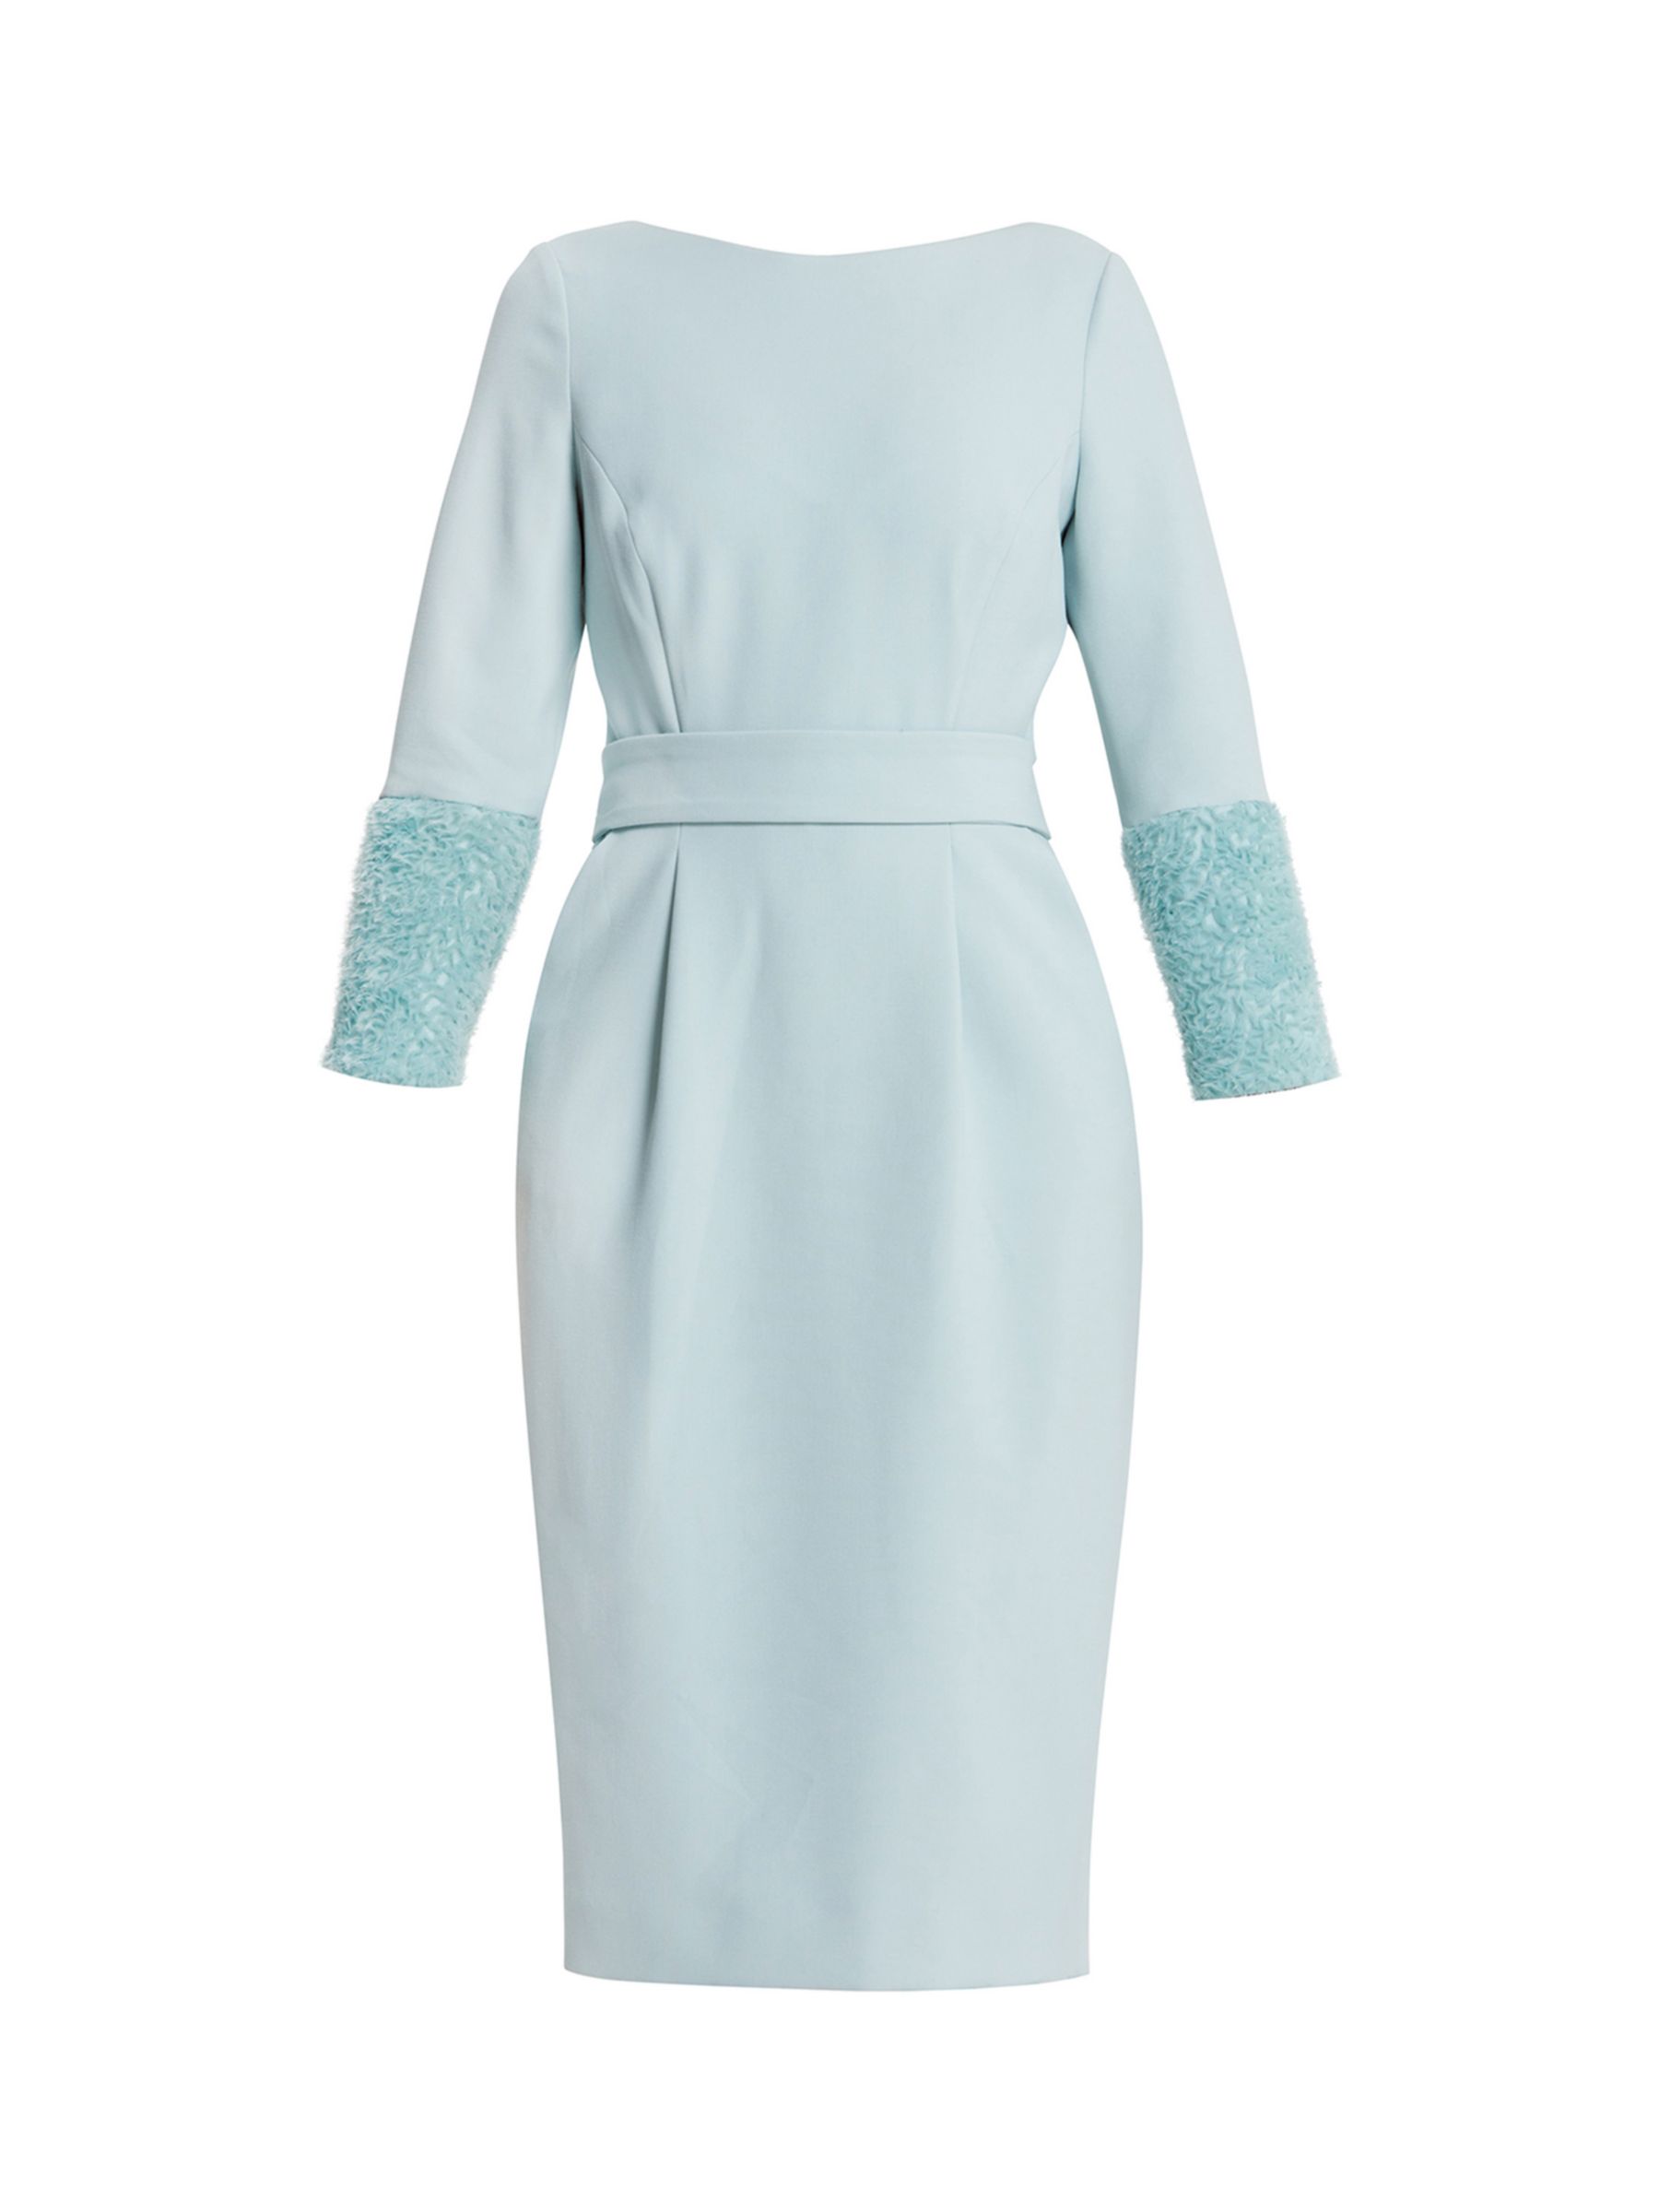 Helen McAlinden Dianna Tailored Dress, Mist, 8